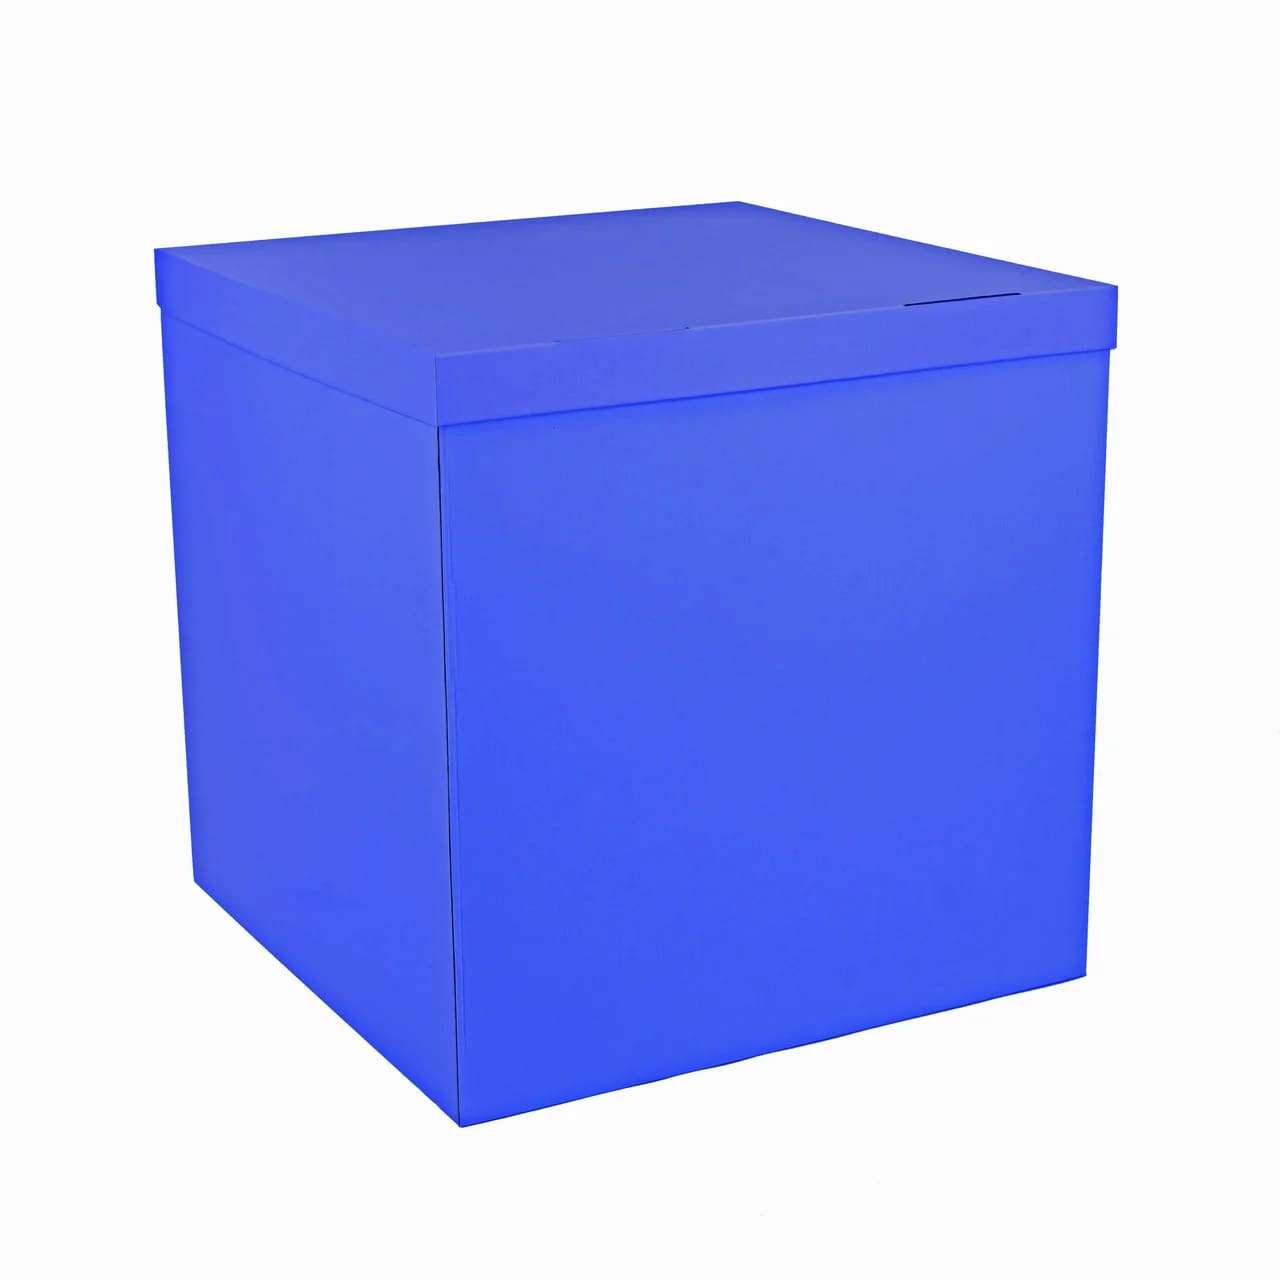 Коробка синяя 70*70*70см для воздушных шаров картинка